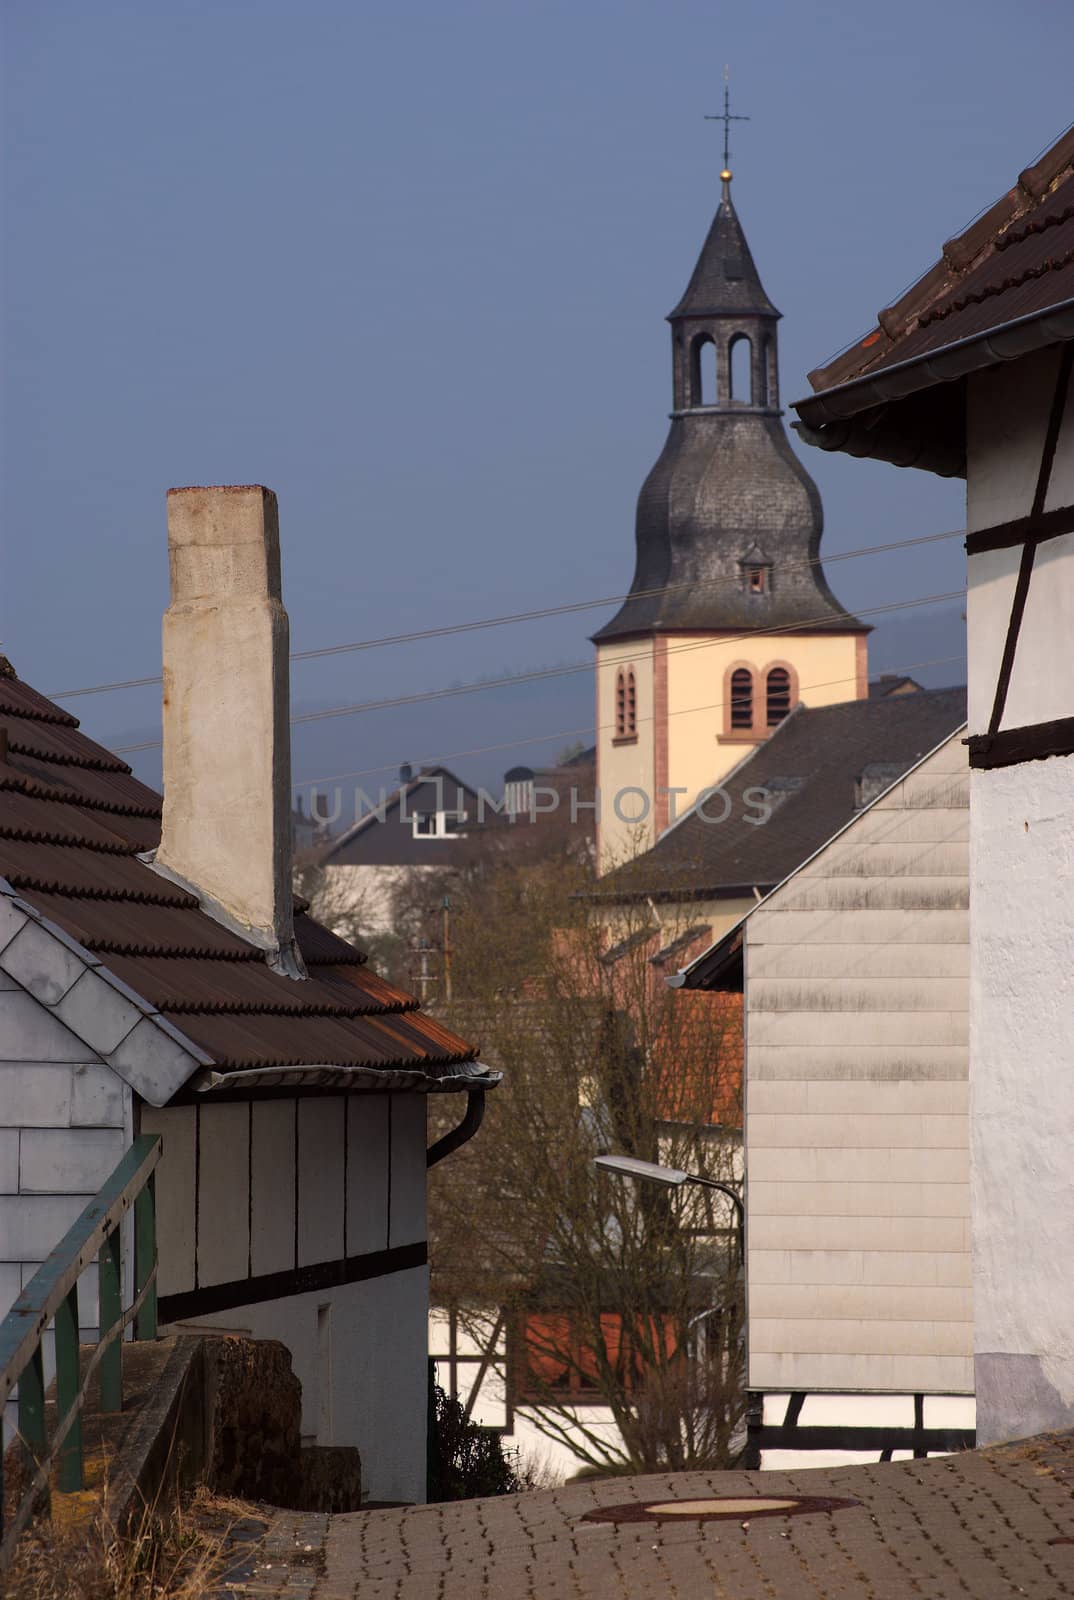 Belltower in old German town by saasemen